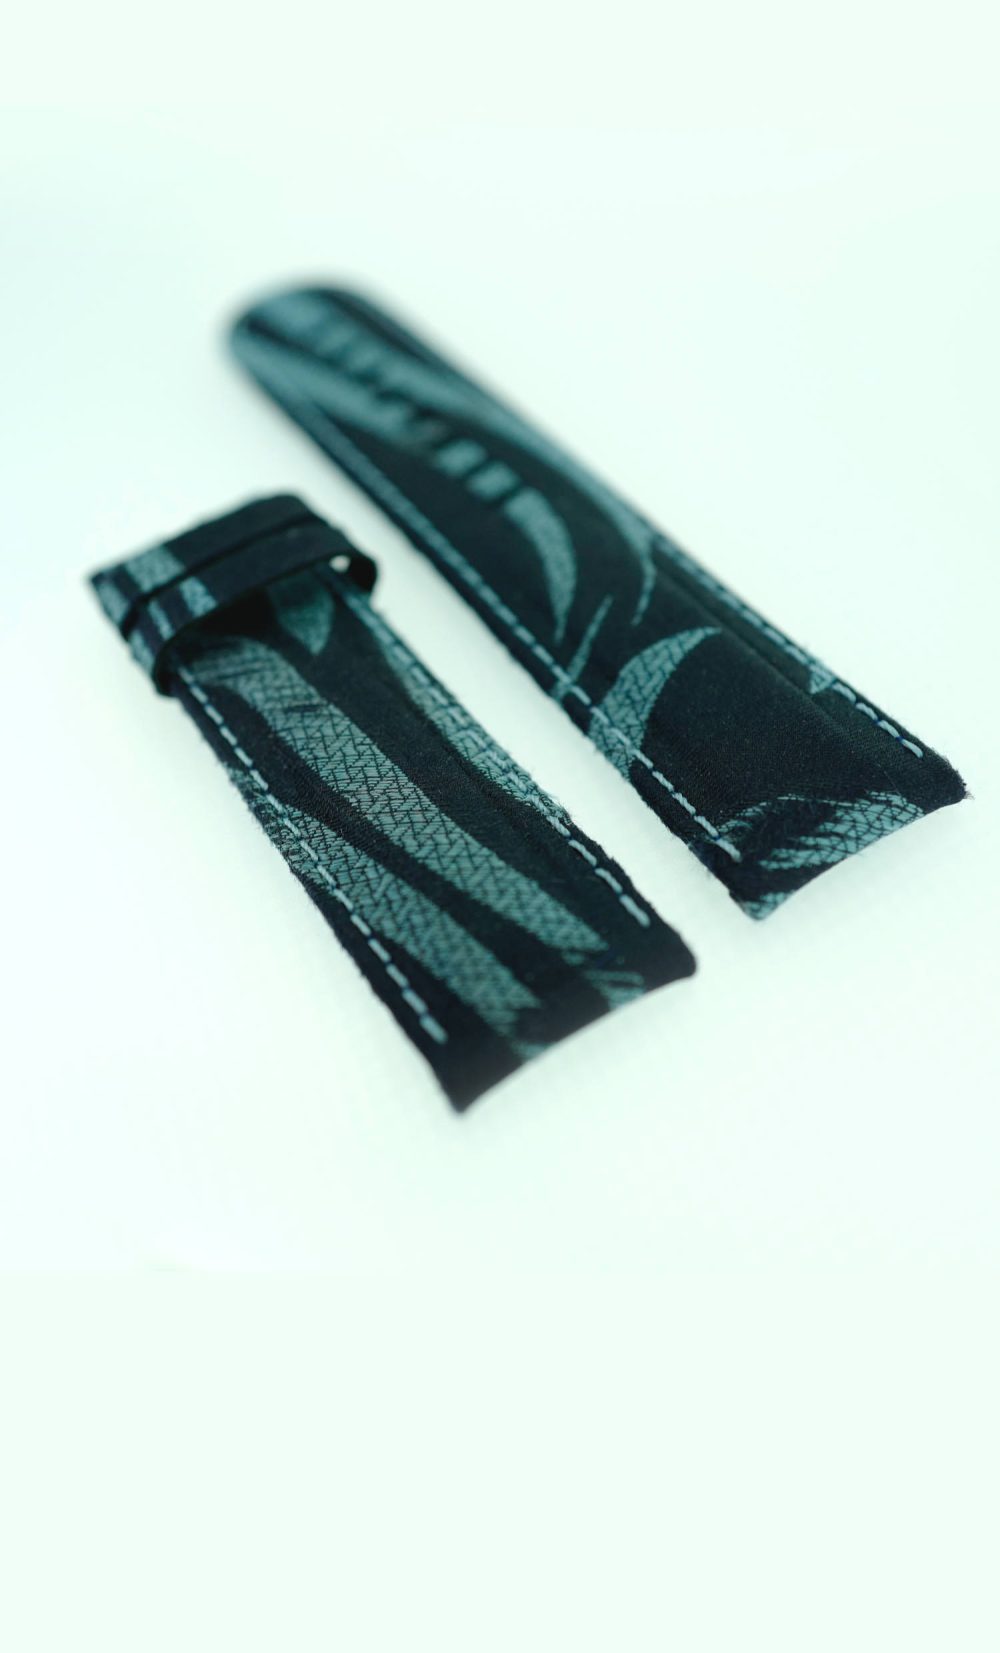 Silk watch straps